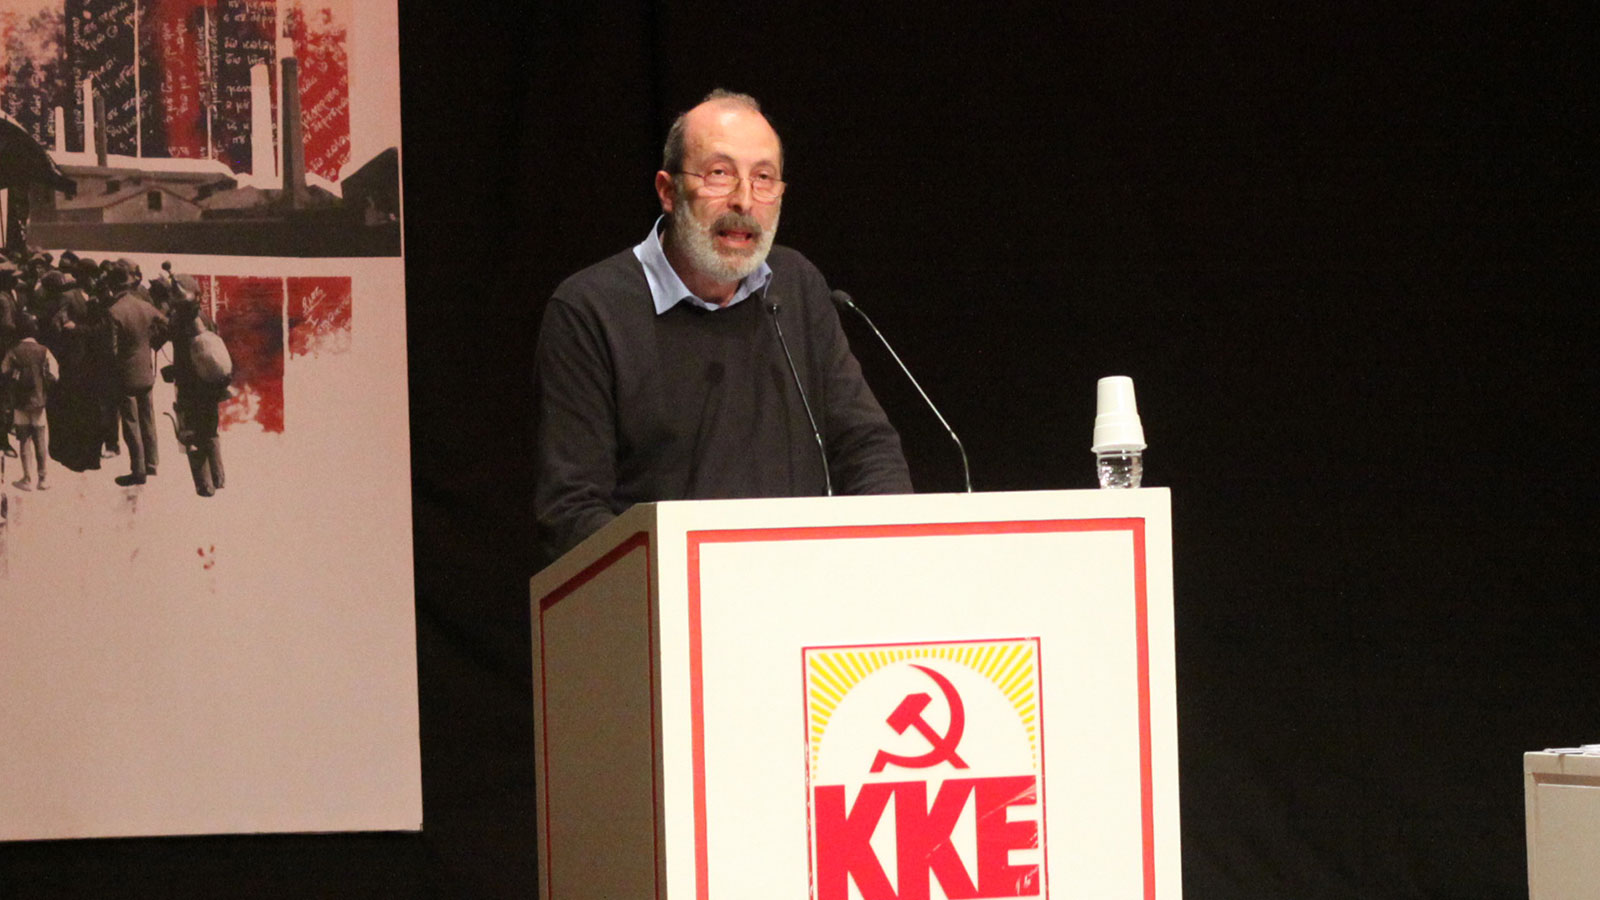 5ο Επιστημονικό Συνέδριο του ΚΚΕ: «Δημιουργώντας τις προϋποθέσεις για την κομμουνιστική παρέμβαση στη σύγχρονη λογοτεχνία»